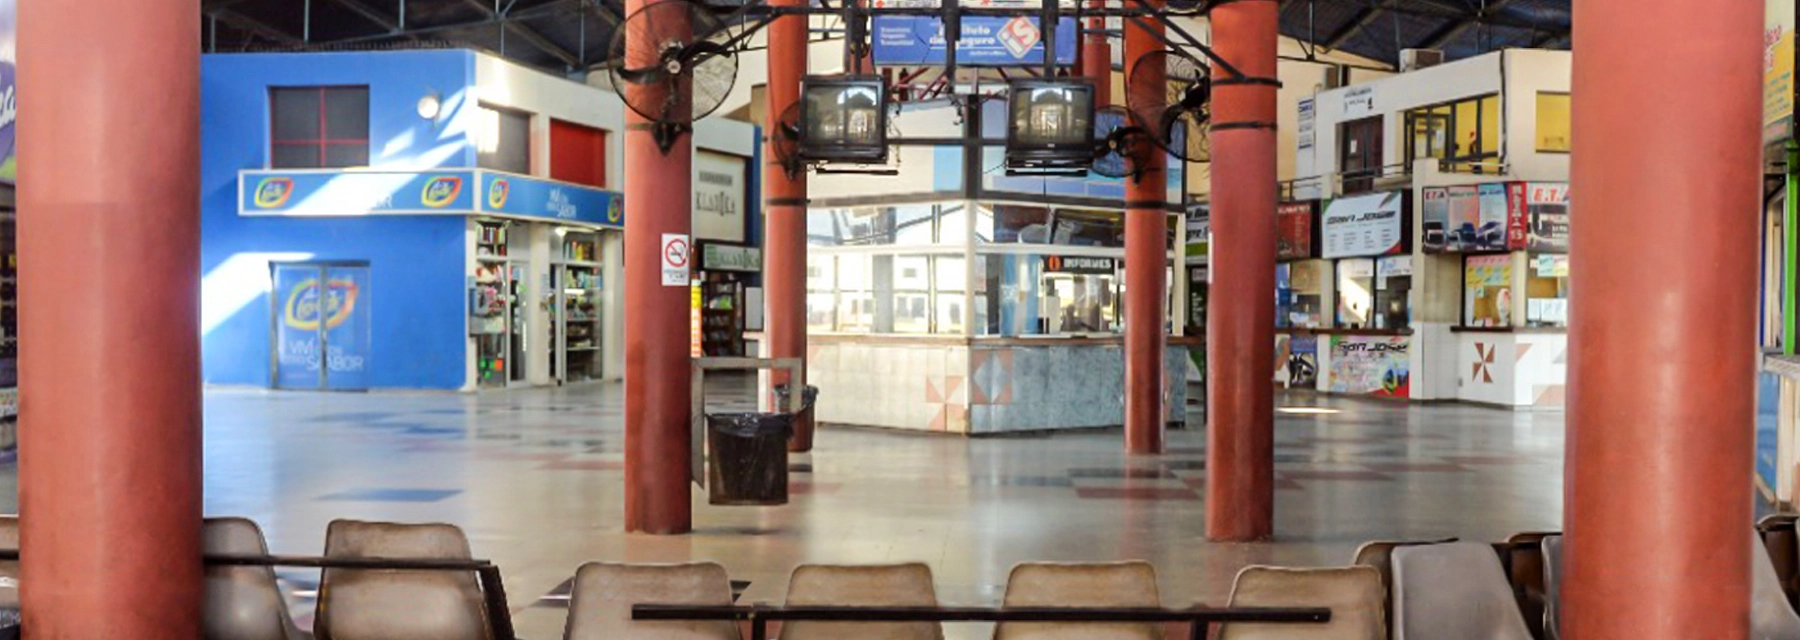 Terminal Paraná